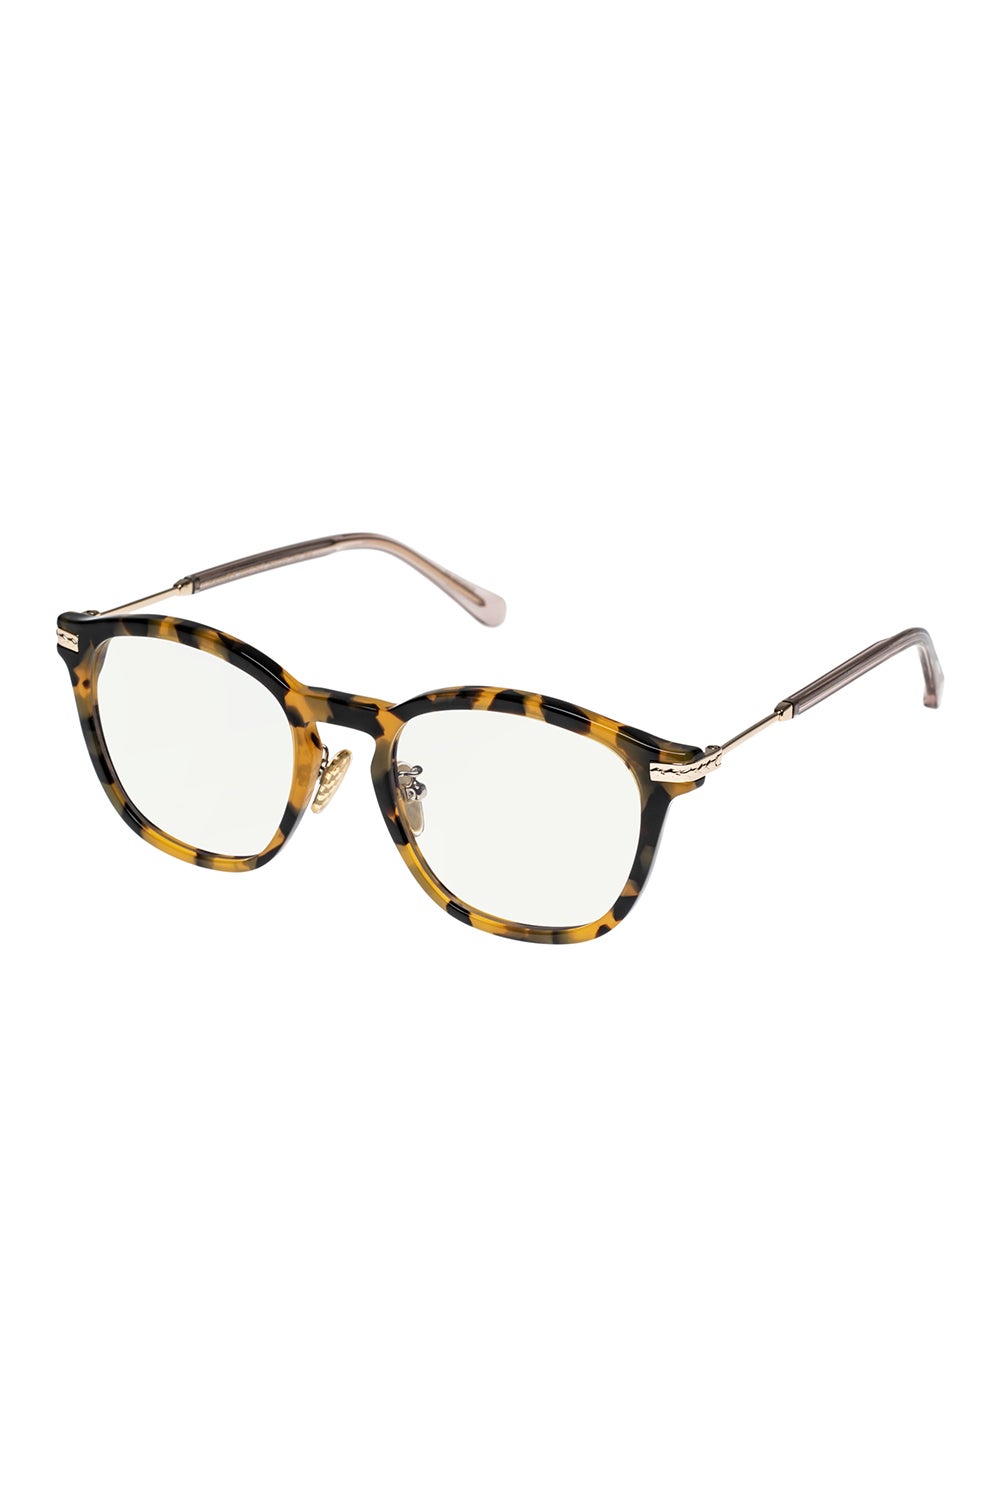 Tortoiseshell Harvest Sunglasses | Karen Walker Eyewear | Sunglasses,  Square sunglasses women, Sunglasses women